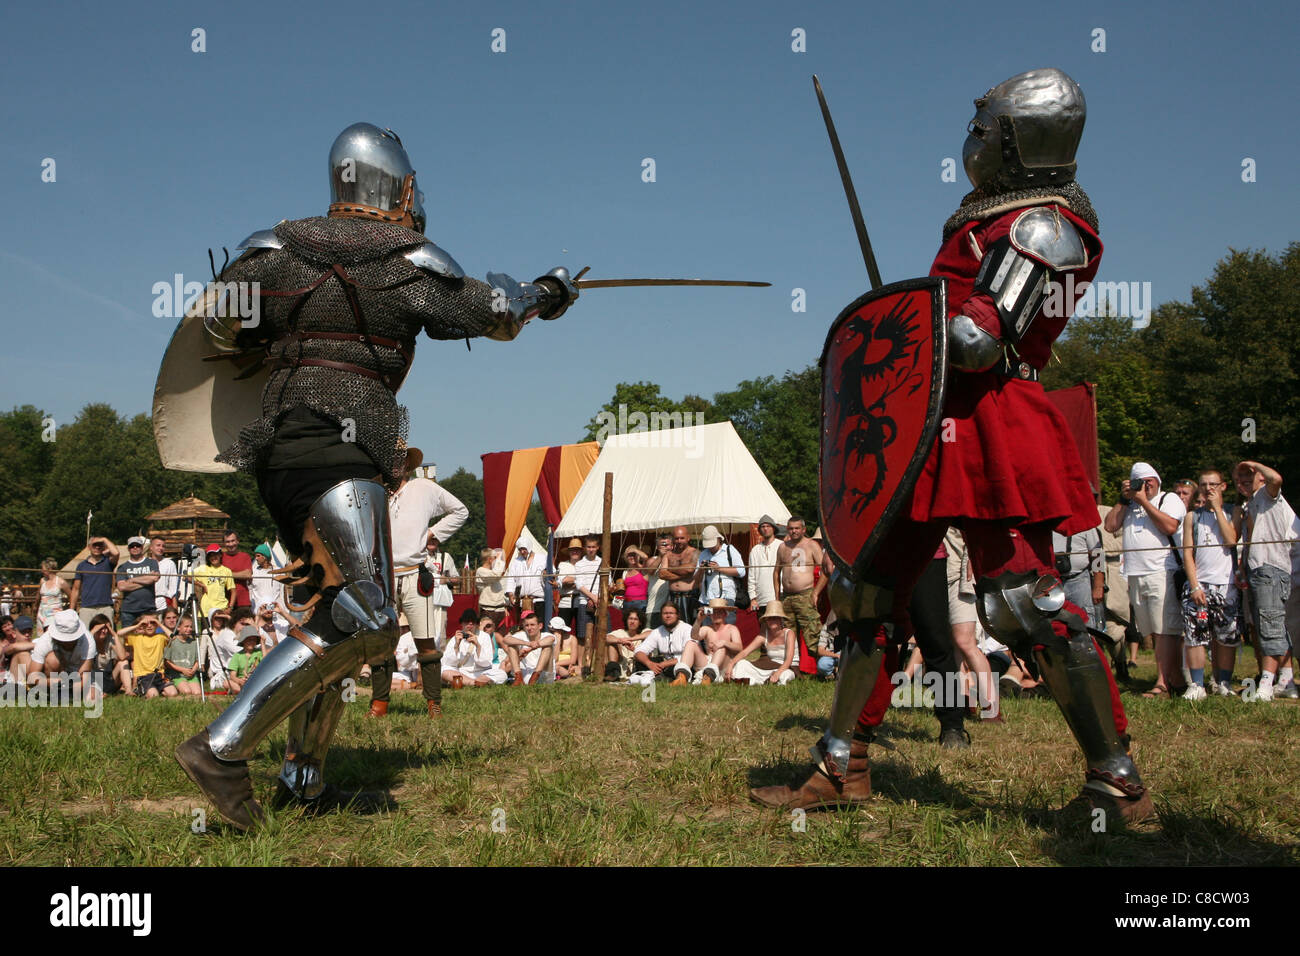 Ritterturnier am Vorabend der Nachstellung der Schlacht von Grunwald (1410) im Norden Polens. Stockfoto